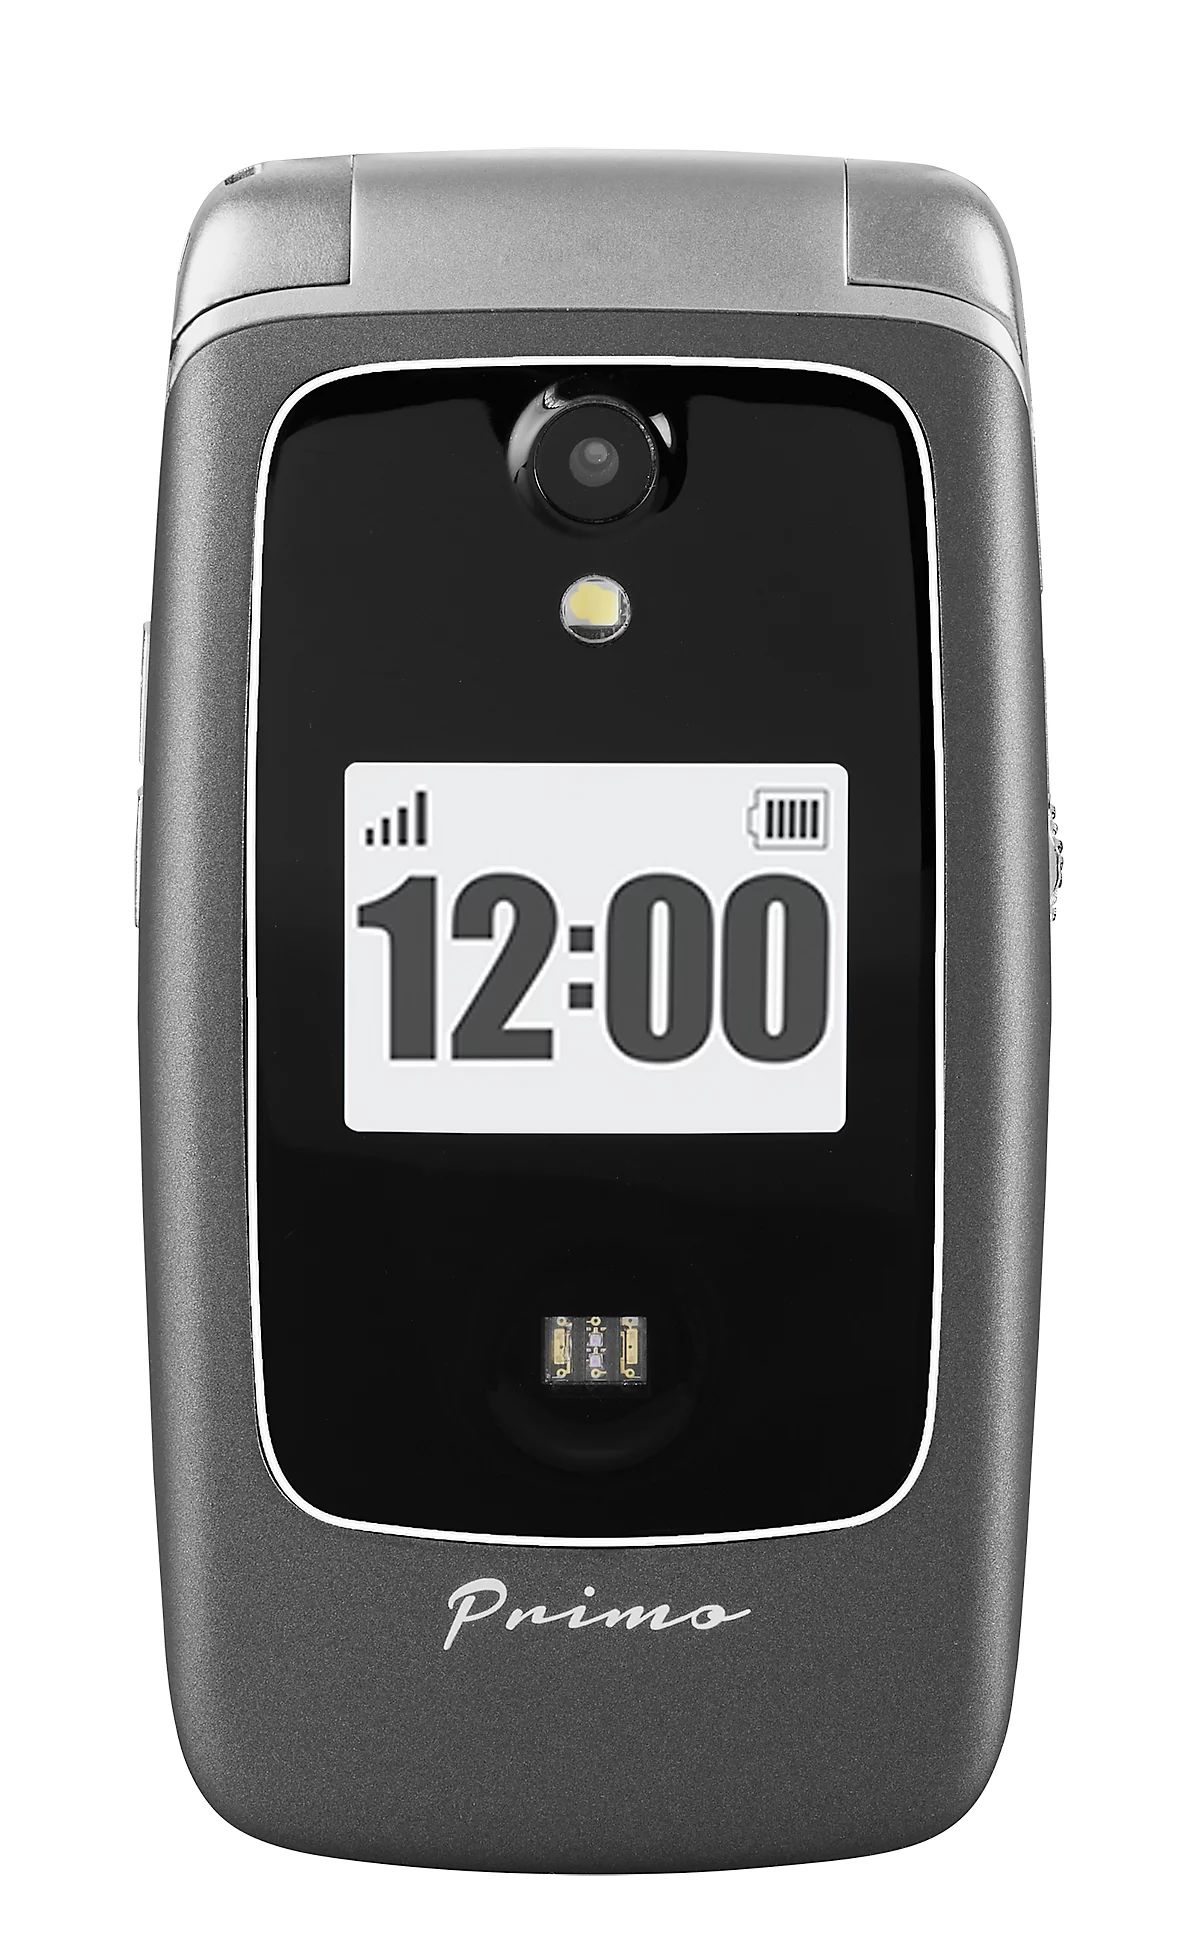 Seniorenhandy Primo™ 418 by Doro, SOS-Taste, Sturzsensor, Innen- & Außen  Ortungsfunktion, Kardiomessung, Kamera, WiFi/GPS/Bluetooth, mit Ladestation  günstig kaufen | Schäfer Shop